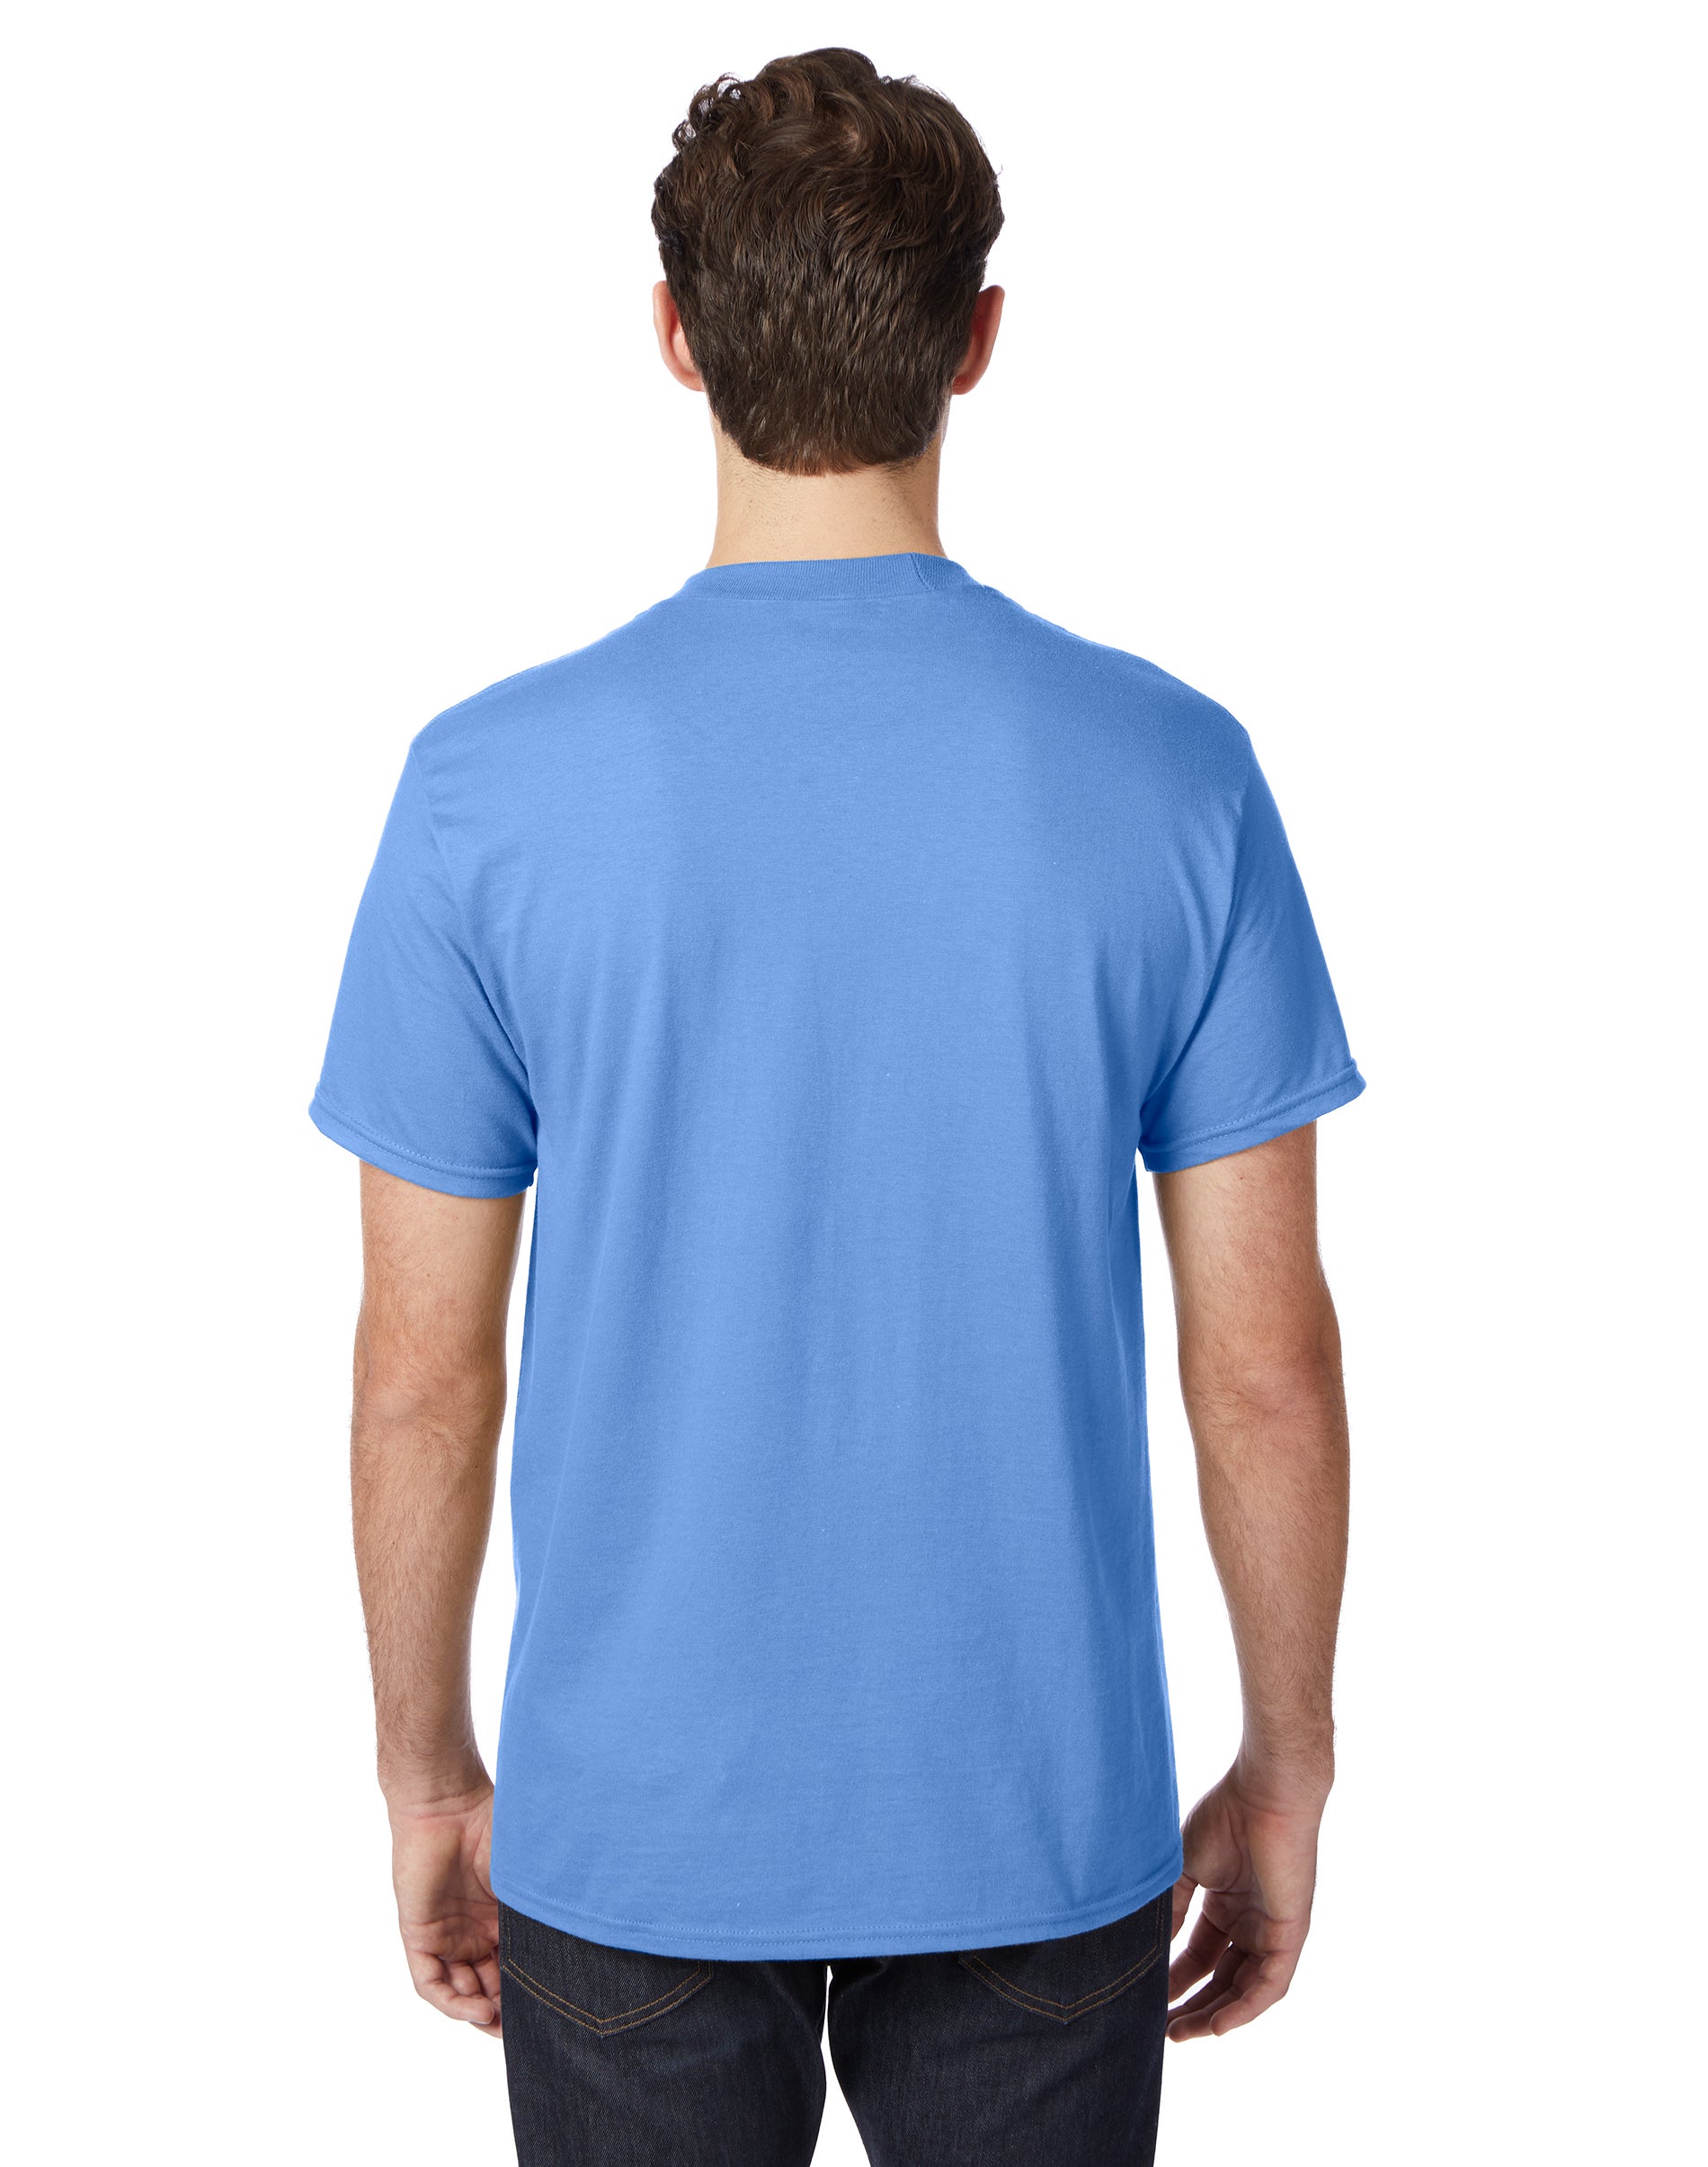 Hanes Beefy-T Unisex Short Sleeve T-Shirt Carolina Blue S - image 3 of 4